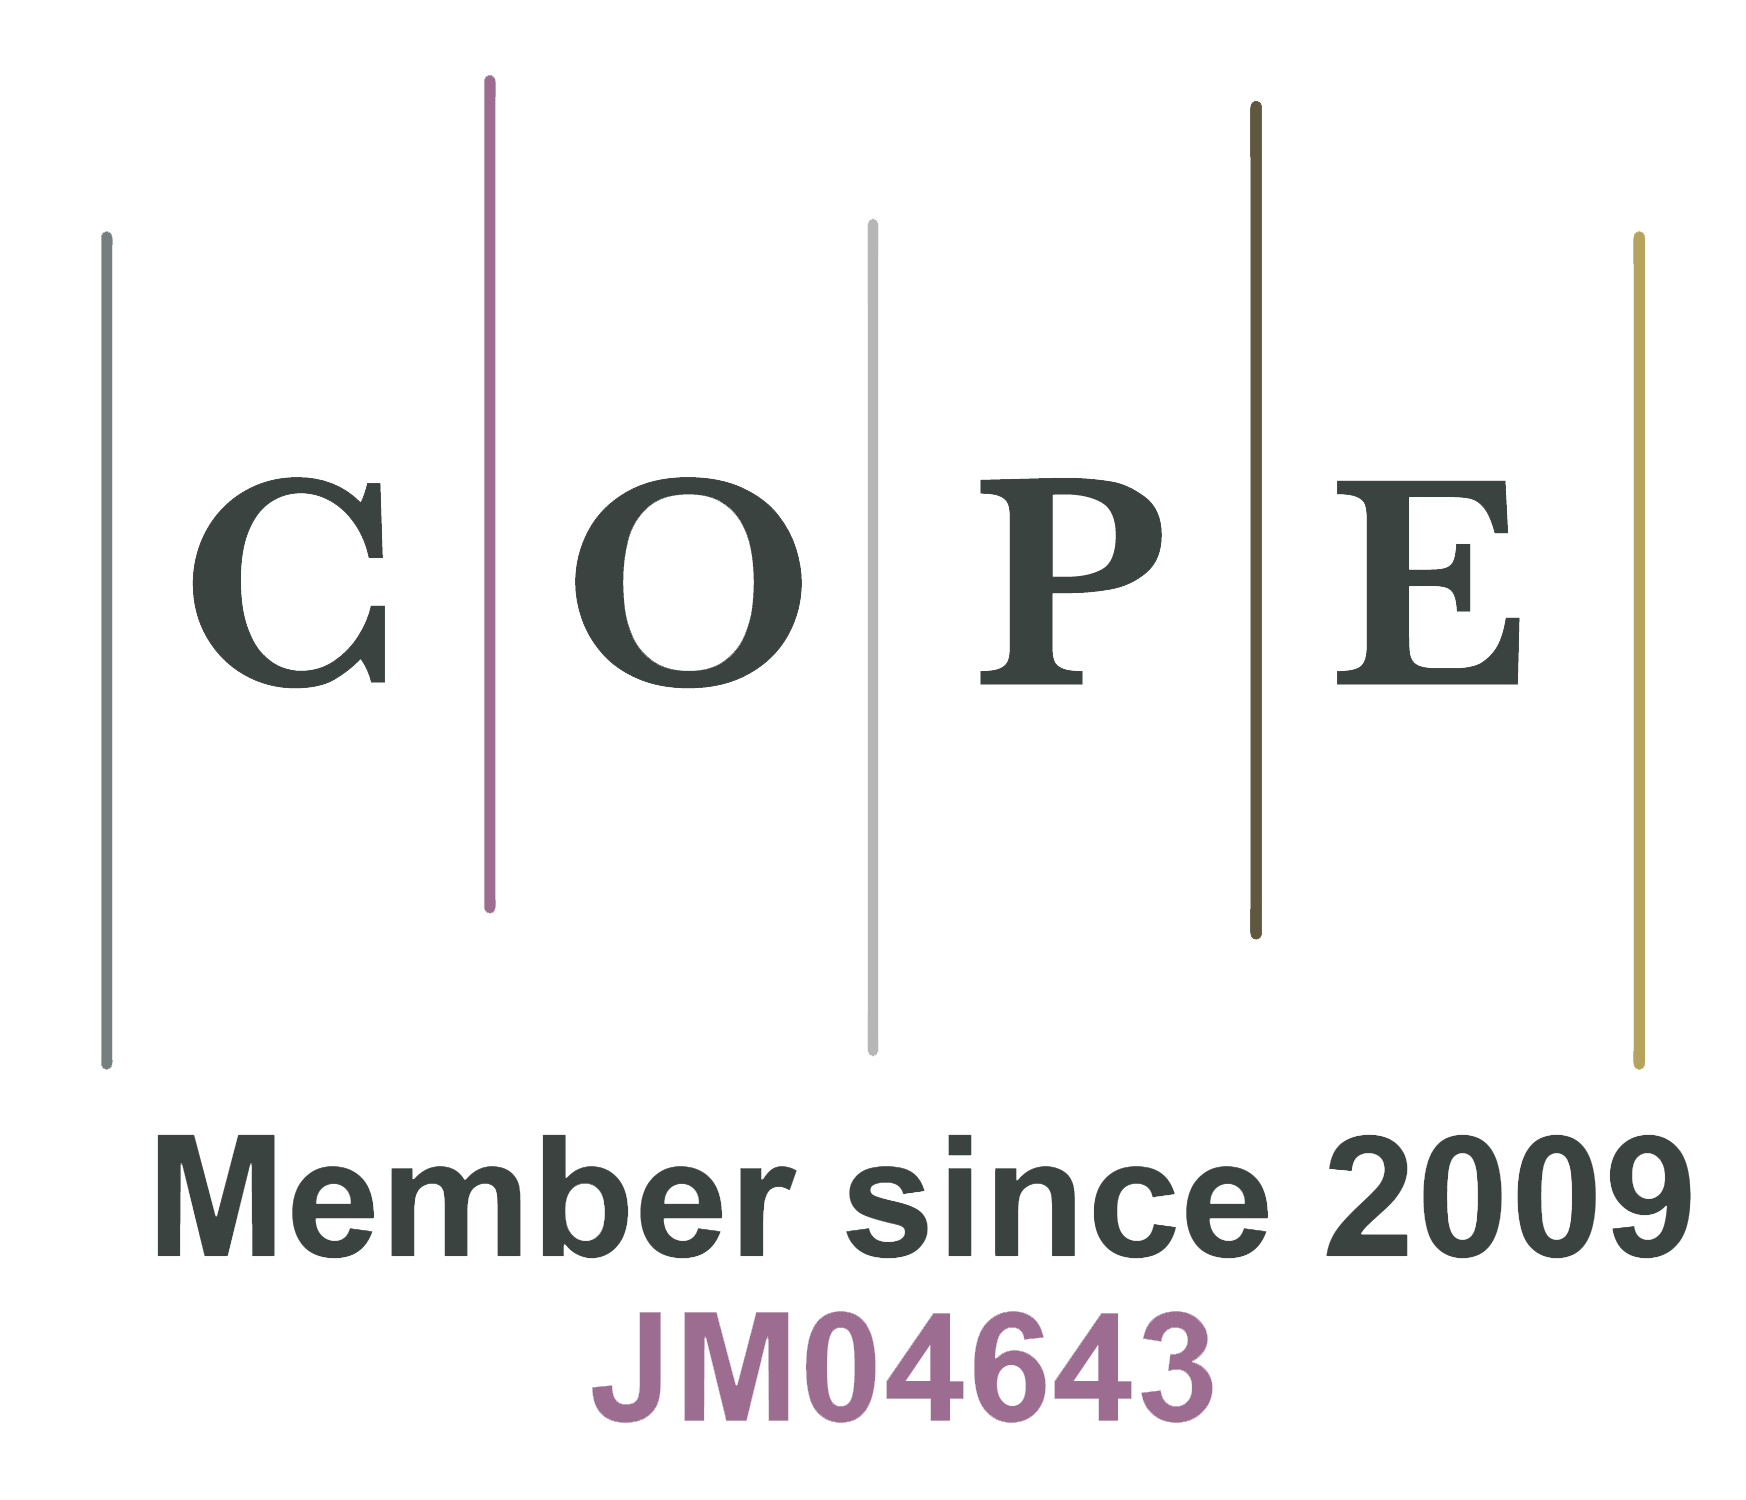 自2009年起成为COPE成员JM04643